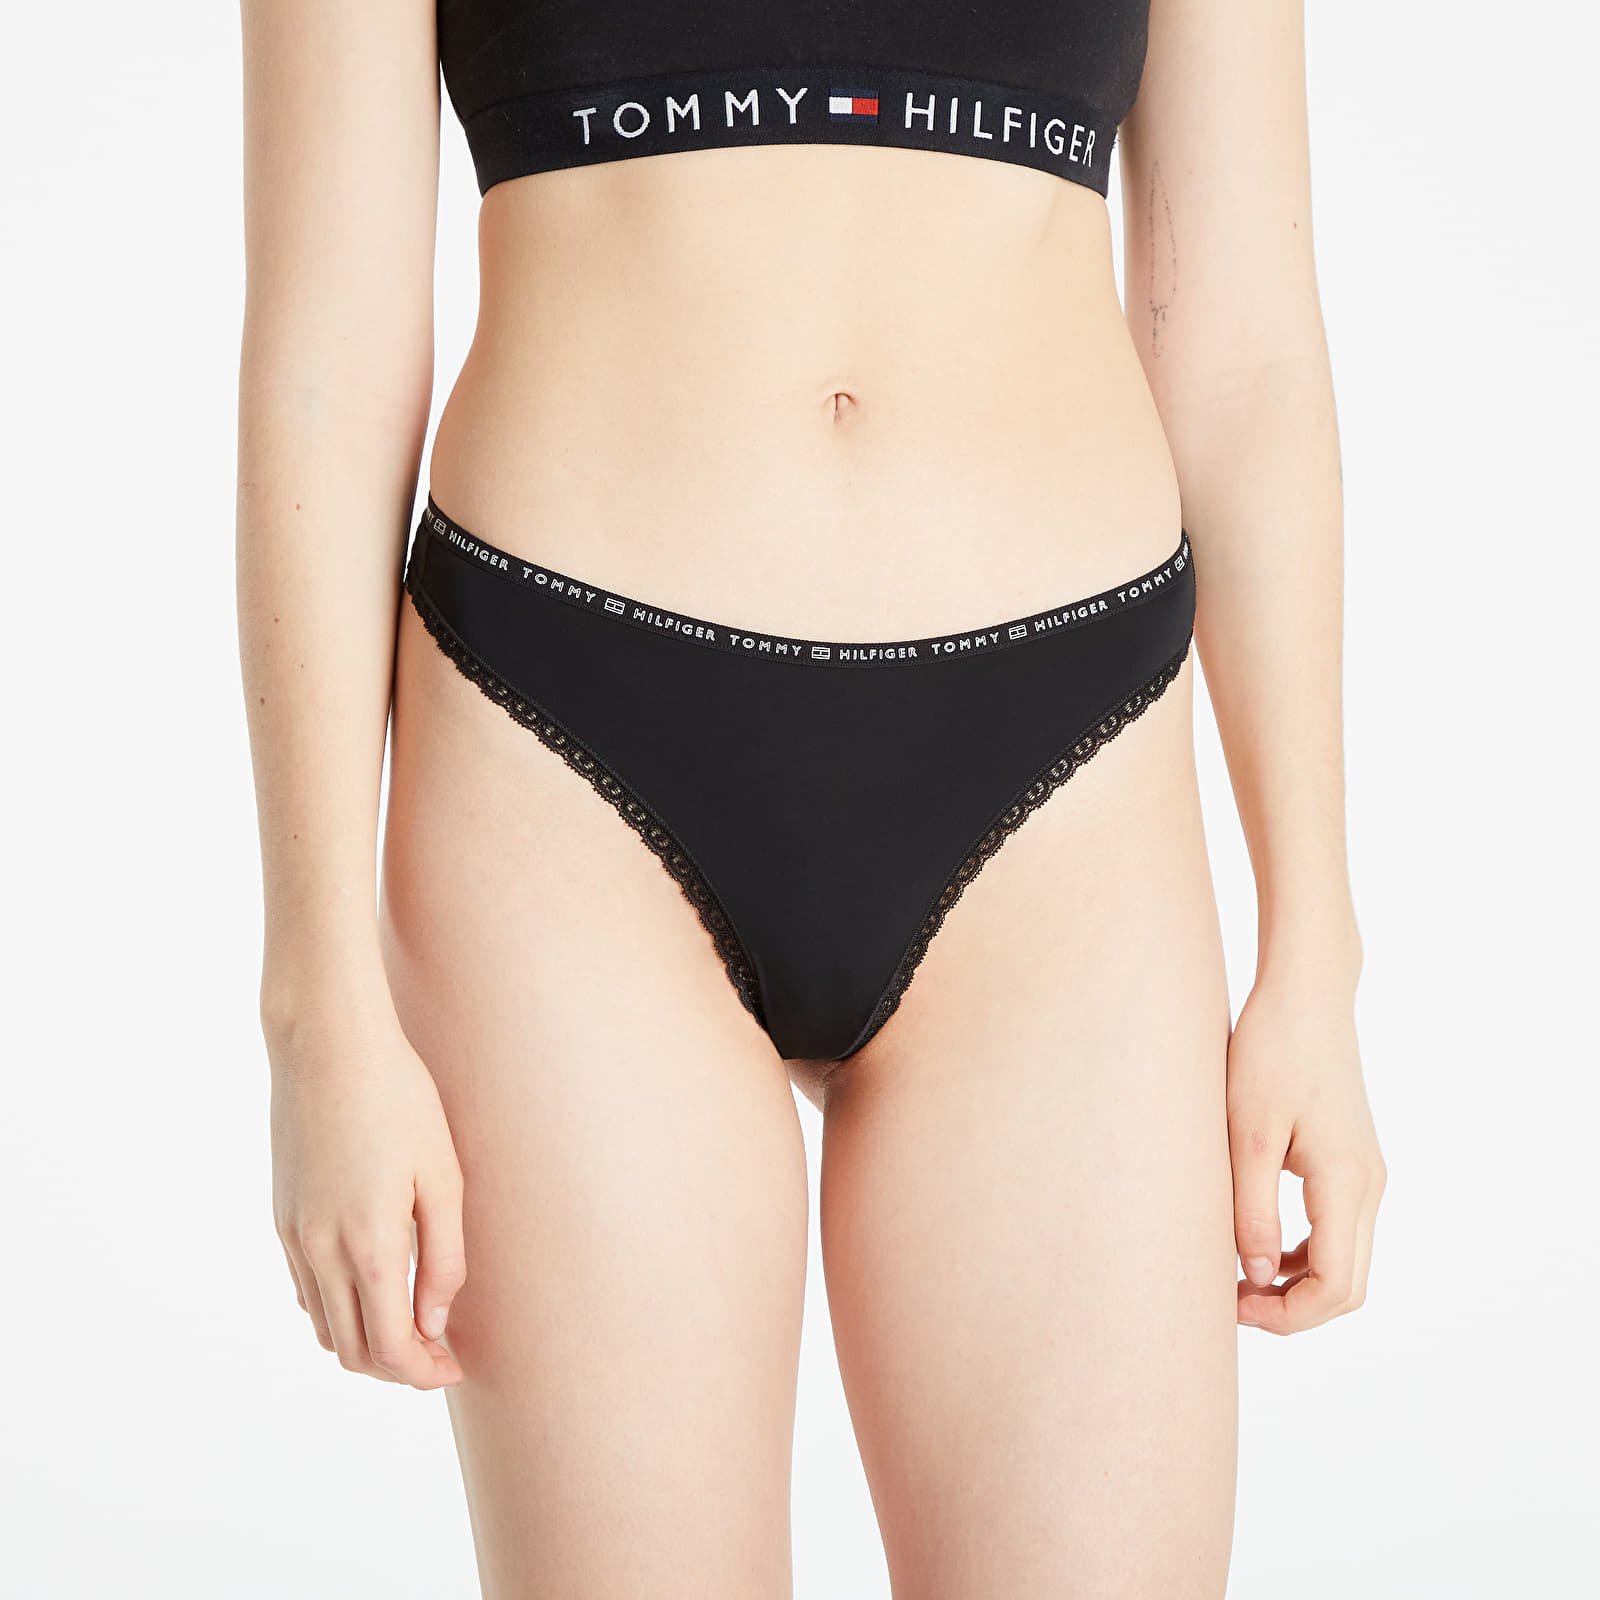 Panties Tommy Hilfiger Lace 3 Pack Thong Black/ Black/ Black